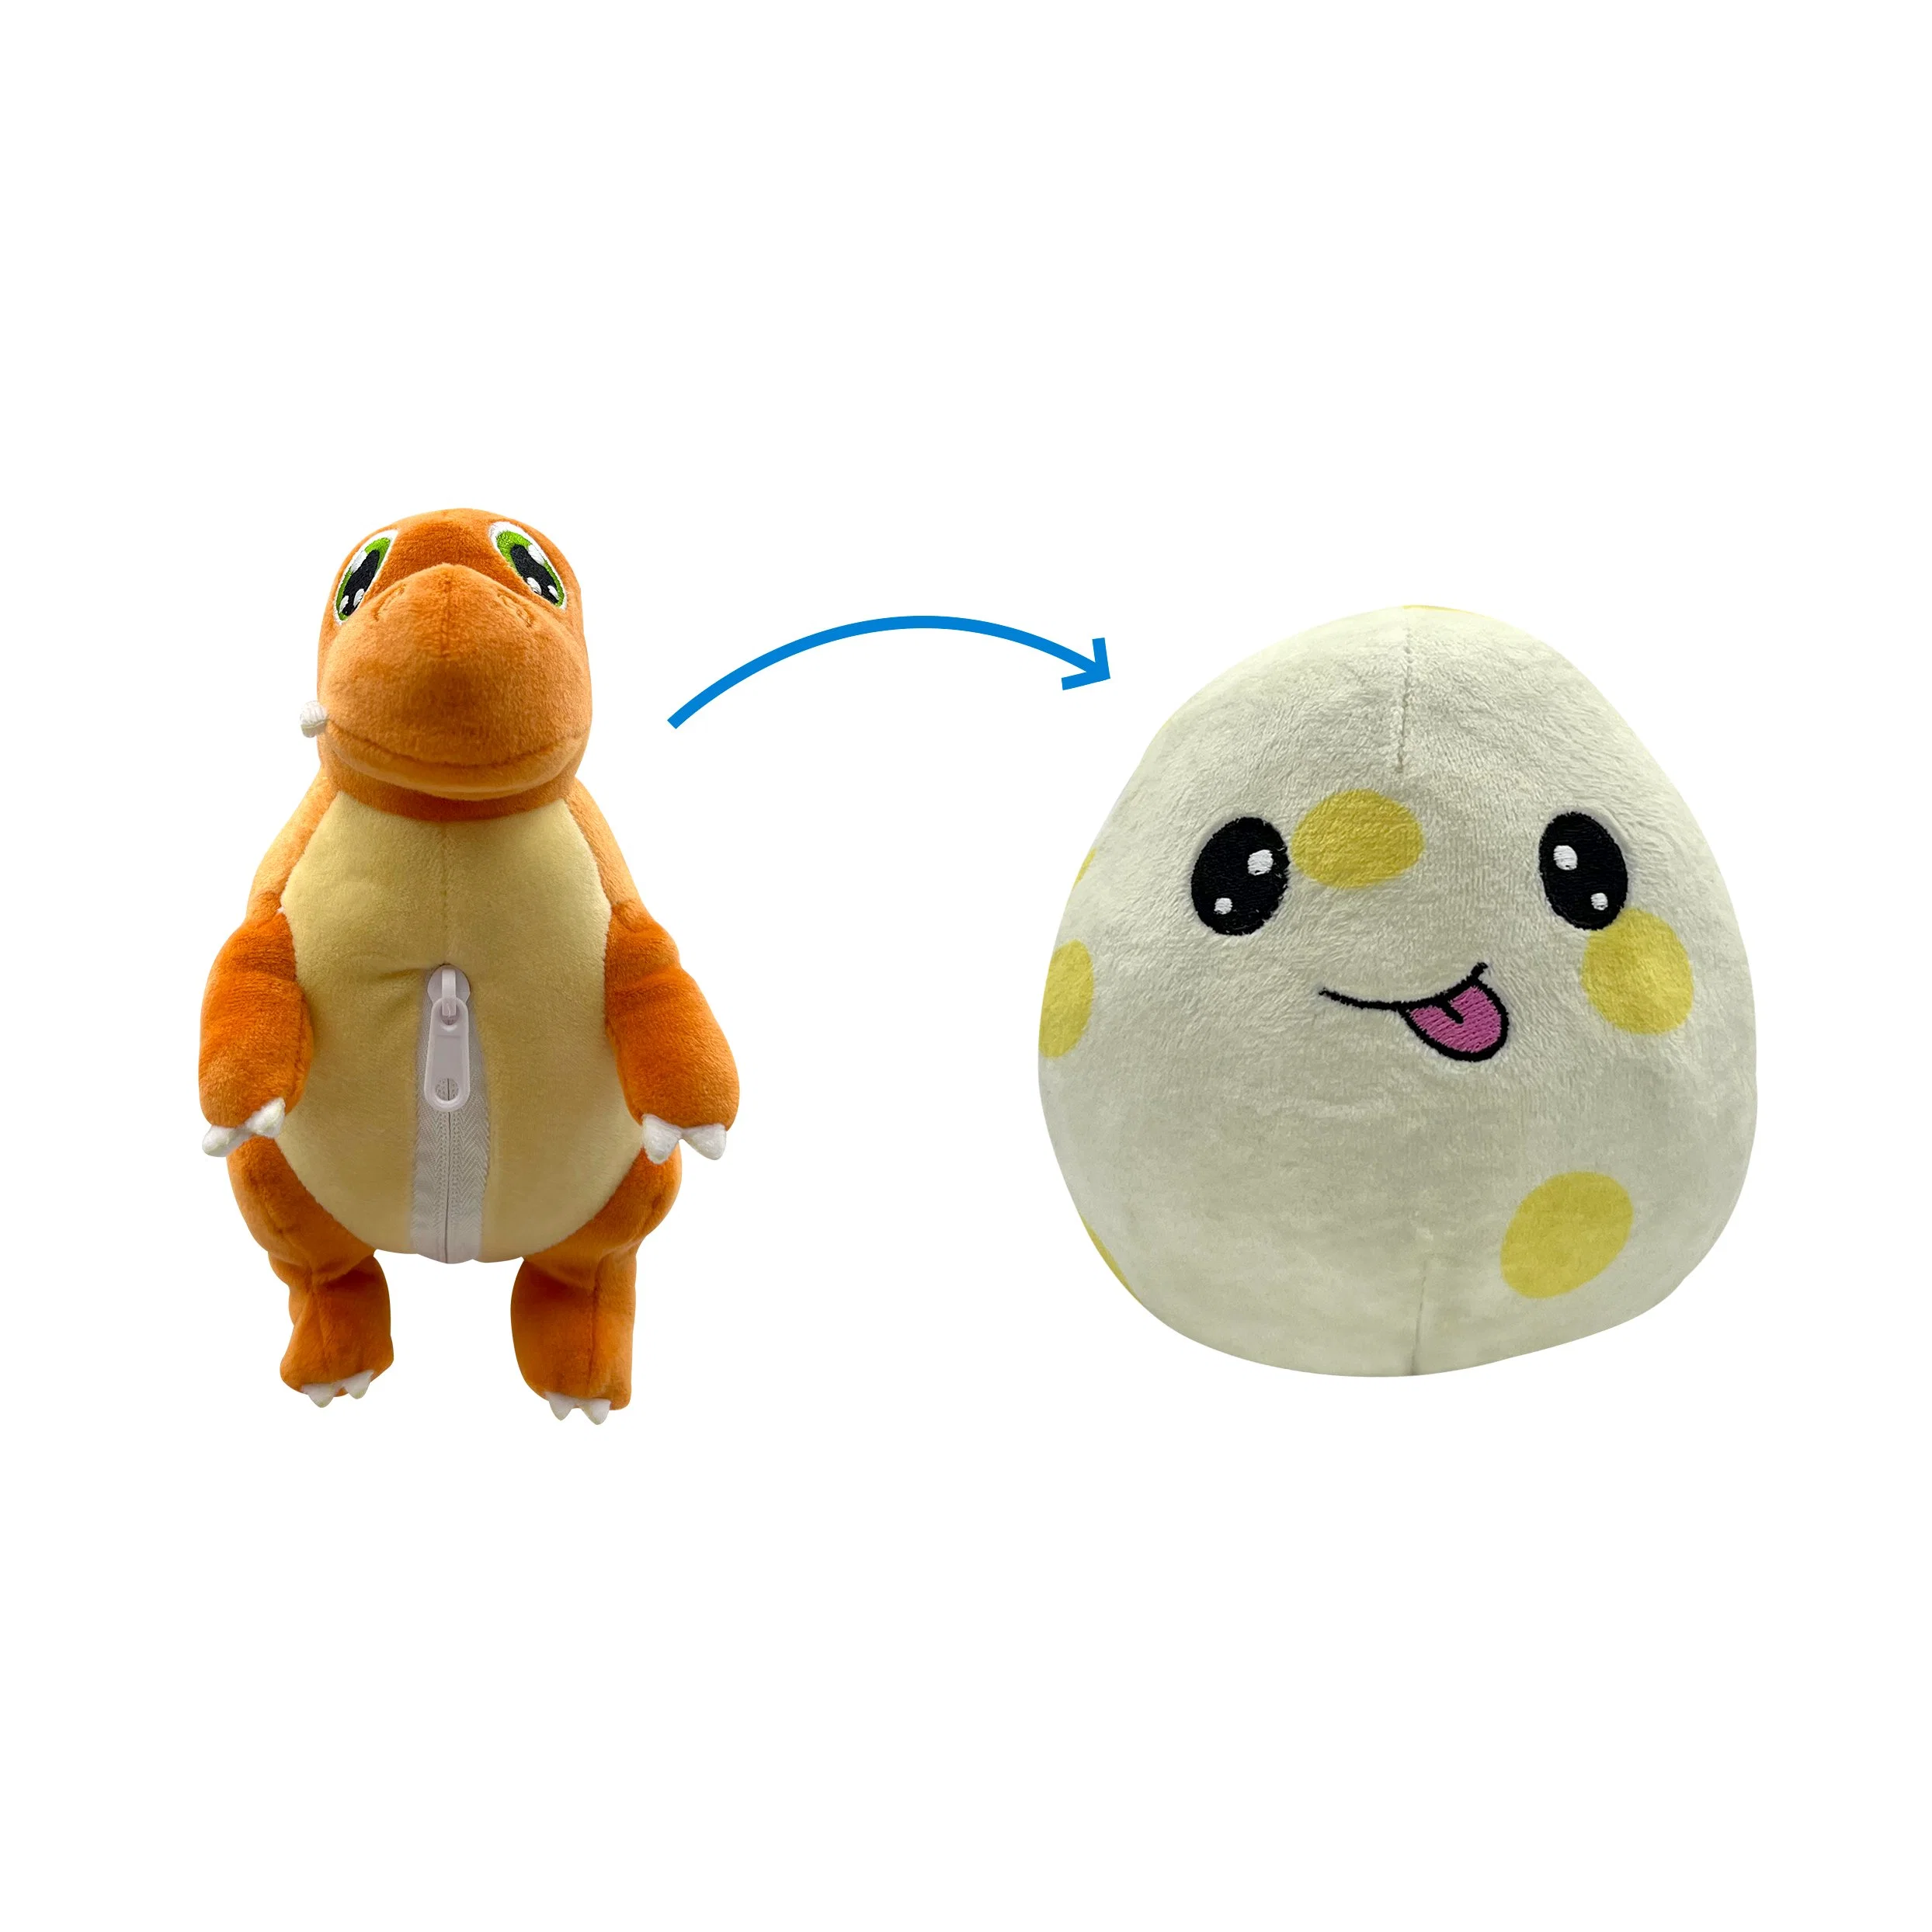 Easter Egg Dinosaur Plush Toy Stuffed Toy for Kids Gift